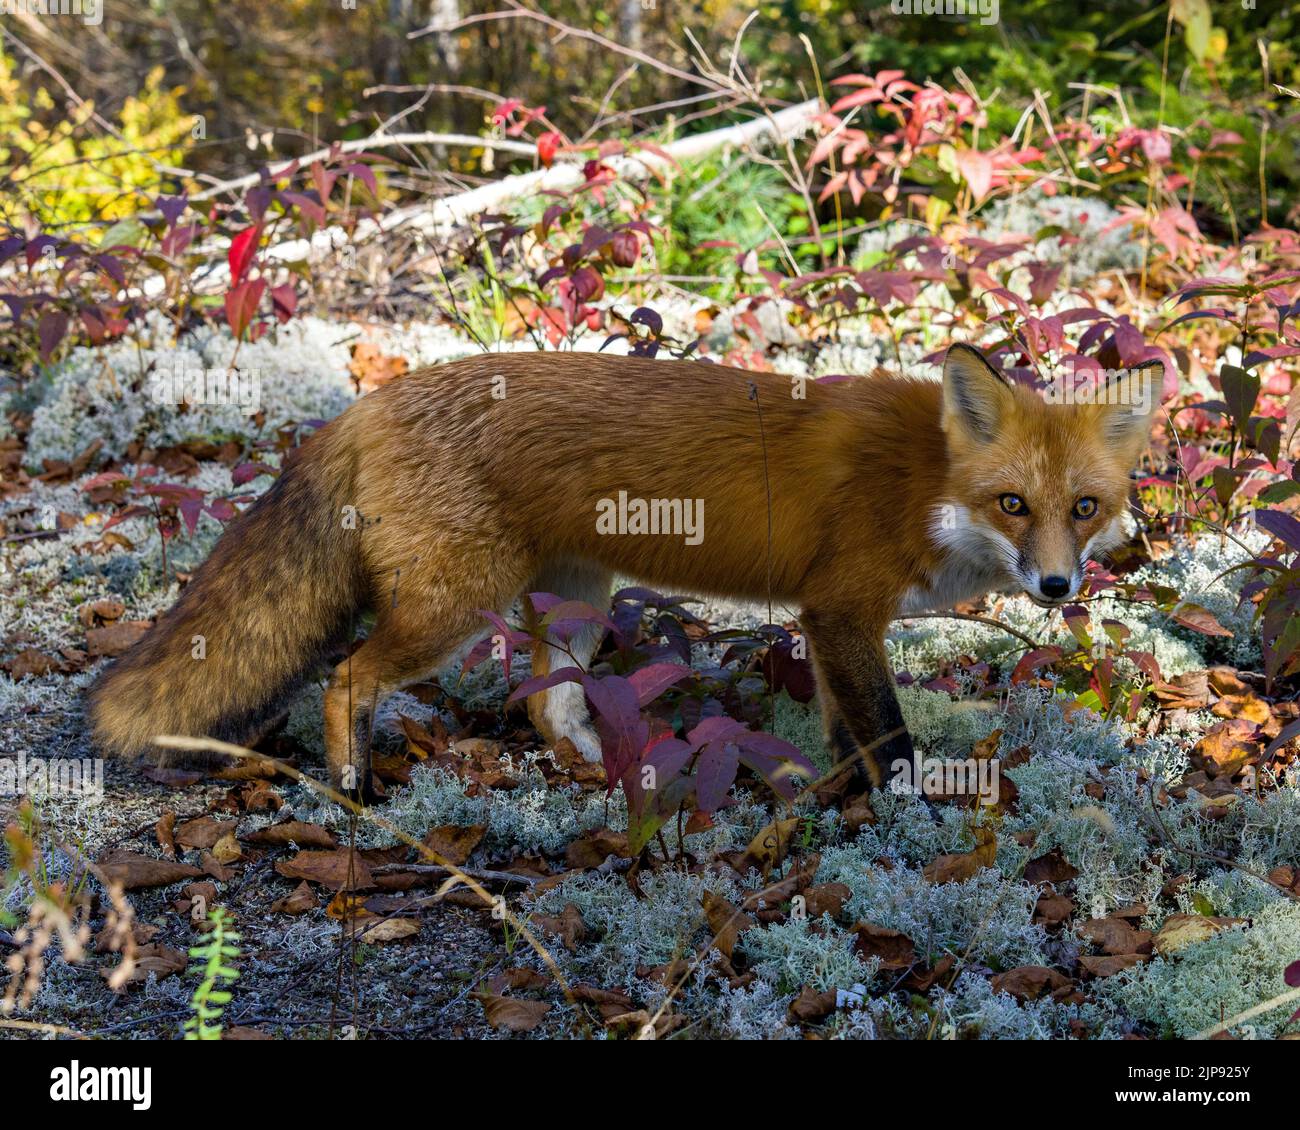 Vue latérale du renard roux debout sur un sol de mousse avec un fond forestier montrant la queue de renard broussaillée dans son environnement et son habitat environnant.Fox image. Banque D'Images